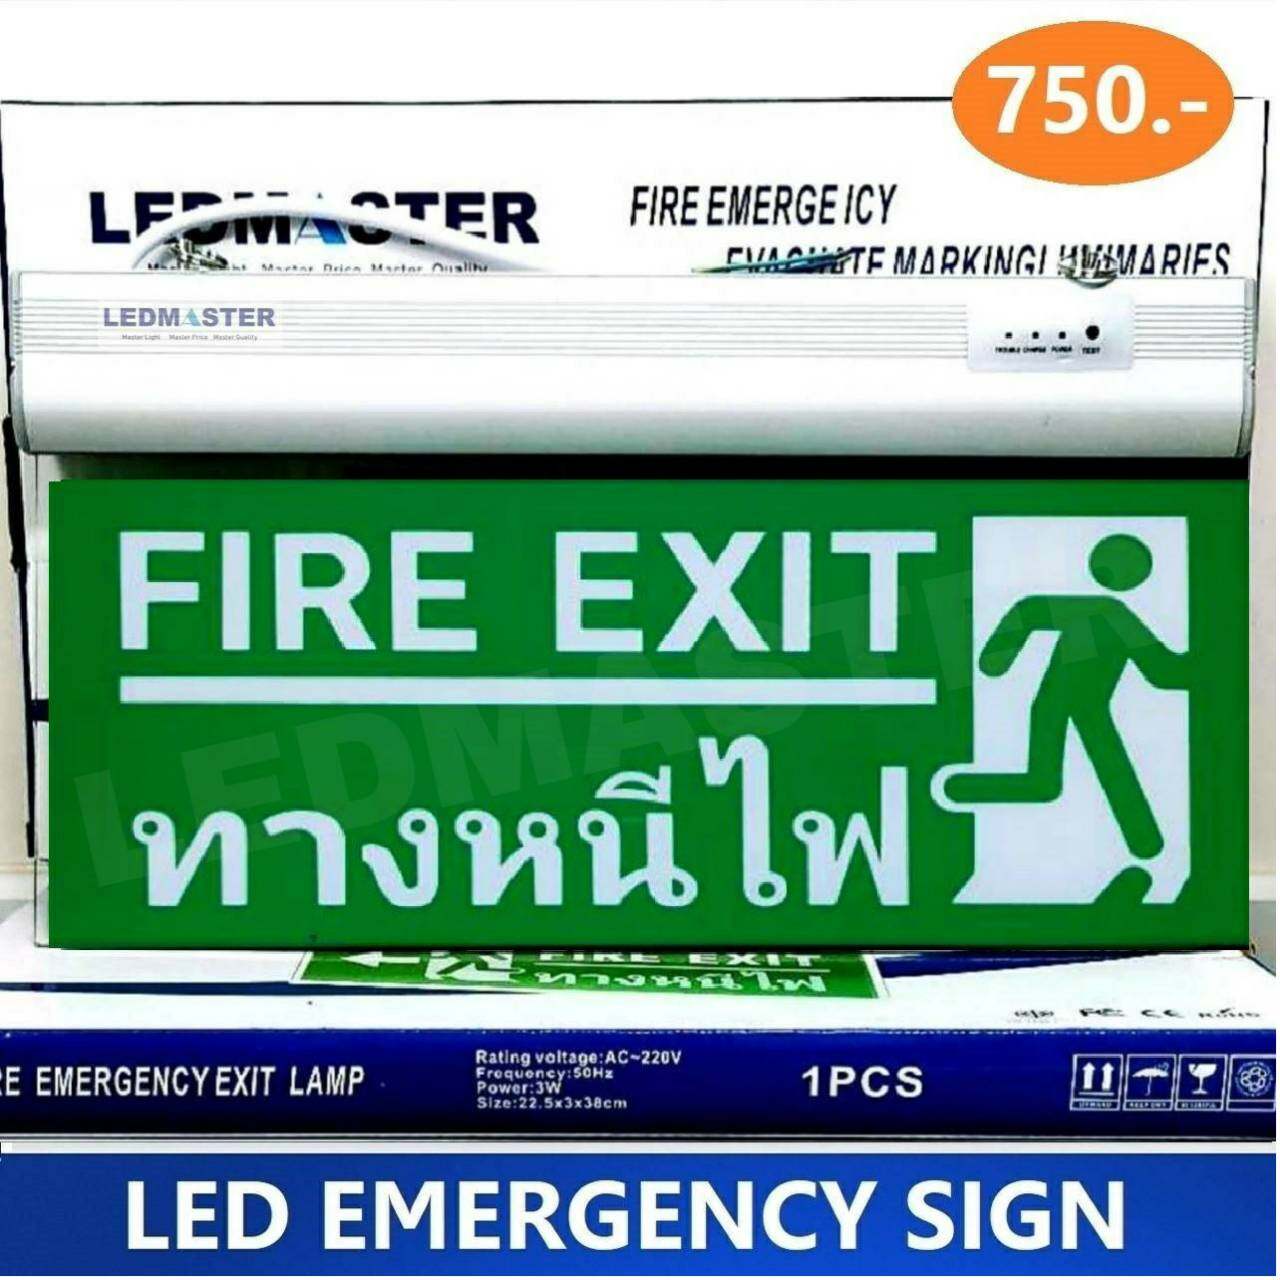 ป้ายทางหนีไฟ Emergency Fire Exit Sign ป้ายสัญลักษณ์ทางหนีไฟ (Fire Exit)  รูปคนวิ่งออกทางประตูหนีไฟ ป้ายหนีไฟพื้นเขียว ข้อความภาษาอังกฤษ ป้ายไฟสำรอง  ป้ายไฟฉุกเฉิน - Ledmastershop - Thaipick